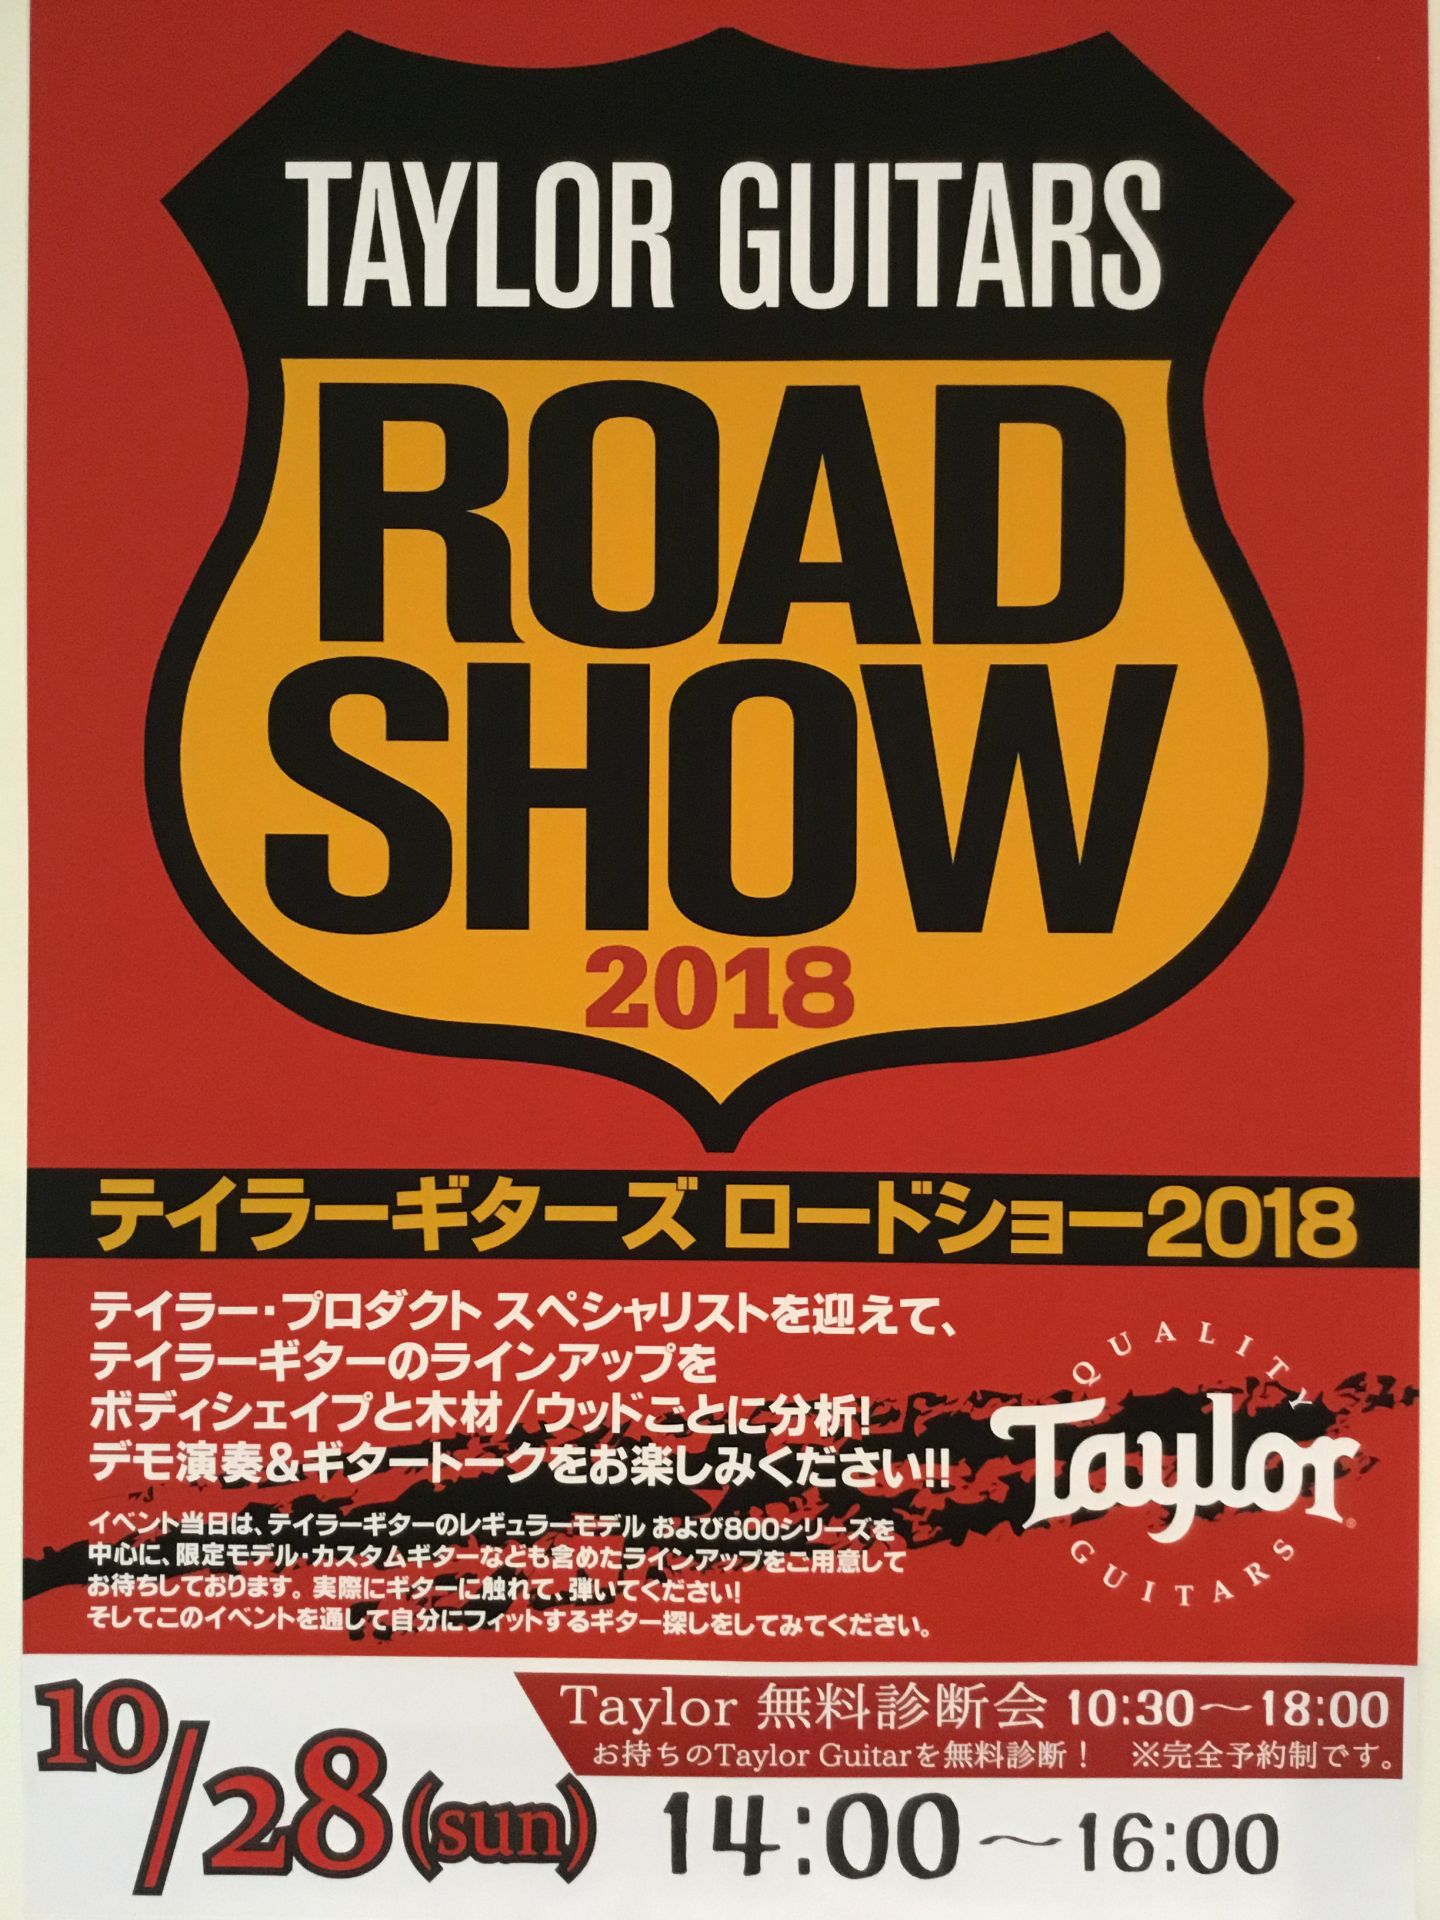 *10月28日テイラーロードショー(Taylor Guitars Road Show)開催！ 10月28日当店でテイラー ギターをより深く知ることのできるイベント、テイラーロードショーを開催いたします！テイラーが気になっている方、良いアコギをお探しの方、見て、聴いて、試せるまたと無い機会ですので是非 […]